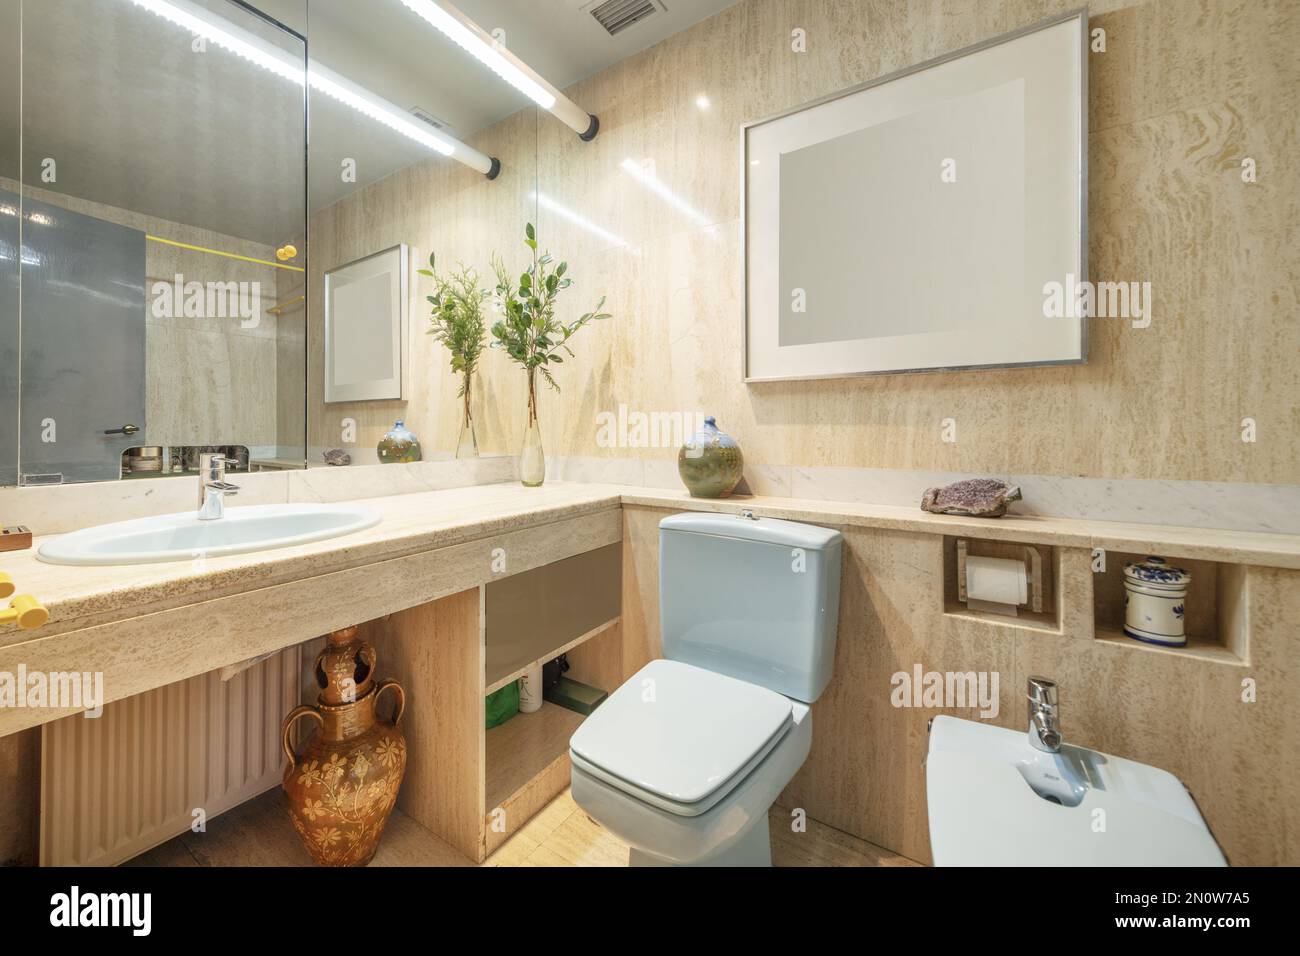 Badezimmer mit hochwertigen Marmormöbeln und Fliesen mit blauem  Porzellanwaschbecken und Spiegel mit versteckter Tür Stockfotografie - Alamy